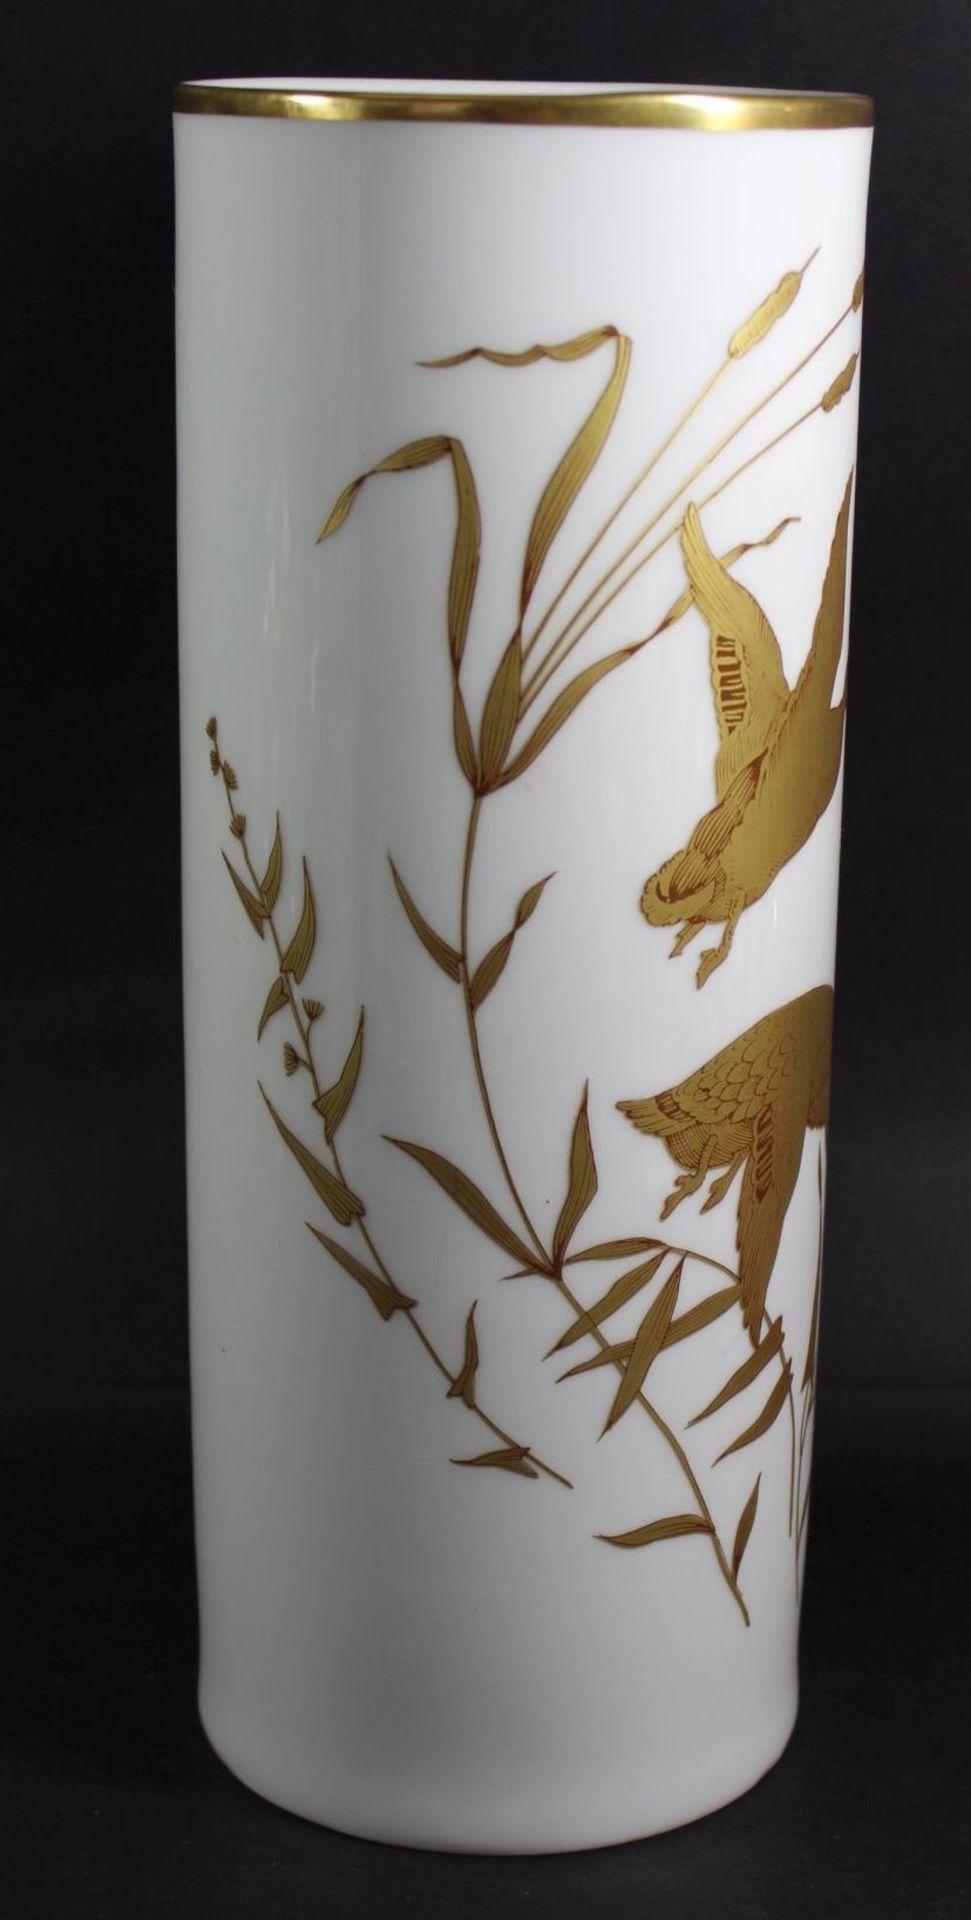 gr. zylindr. Vase "Vohenstrauss" mit Goldstaffage, H-28 cm, D-10 cm - Bild 3 aus 6